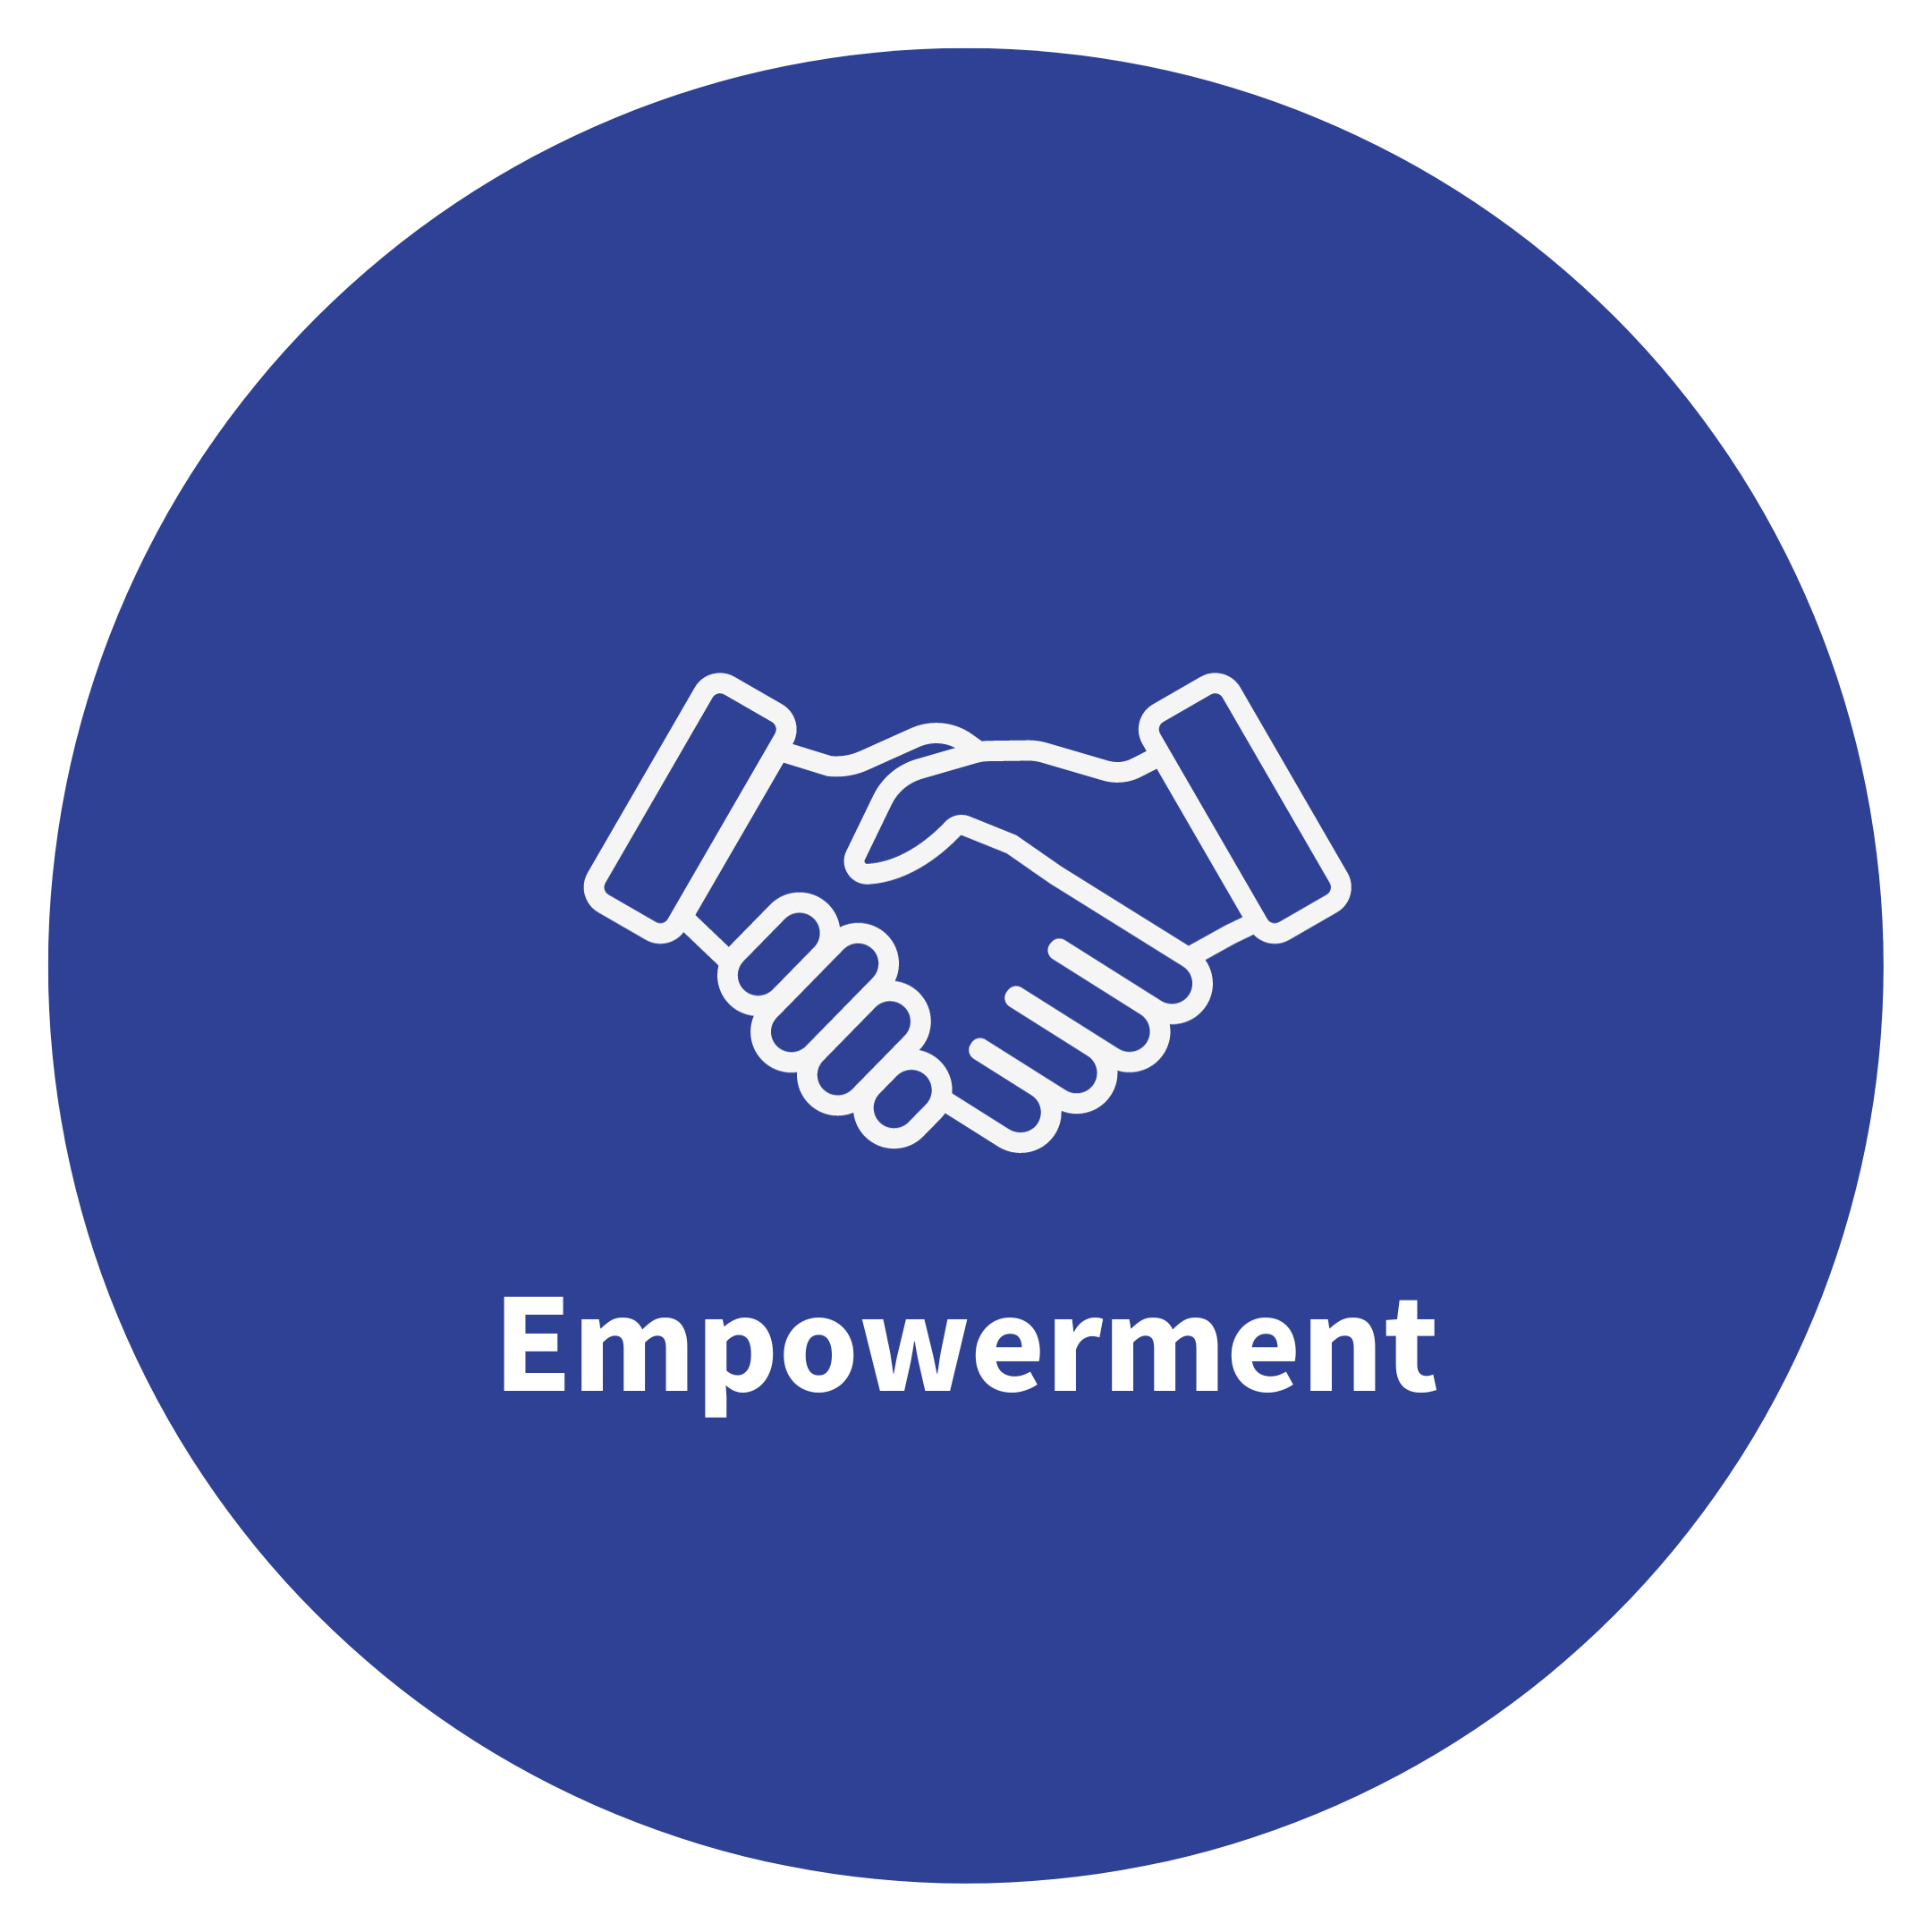 Kreis mit dem Wort Empowerment und einem Icon von zwei sichschüttelnden Händen